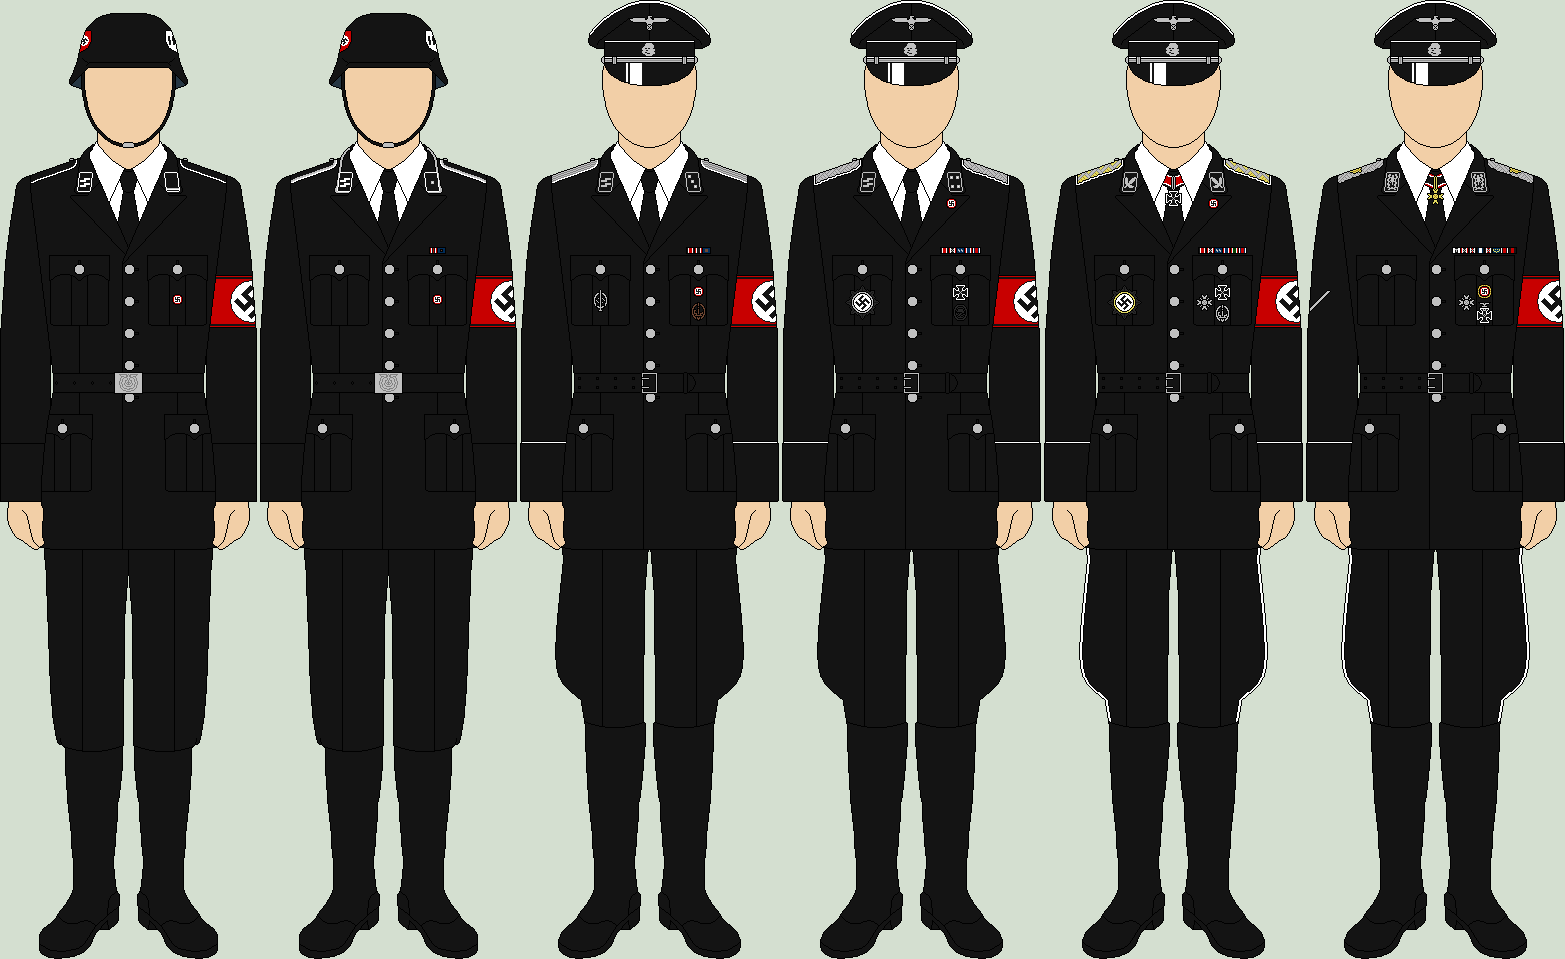 Imagen - Die allgemeine ss parade uniforms.png | Historia Alternativa